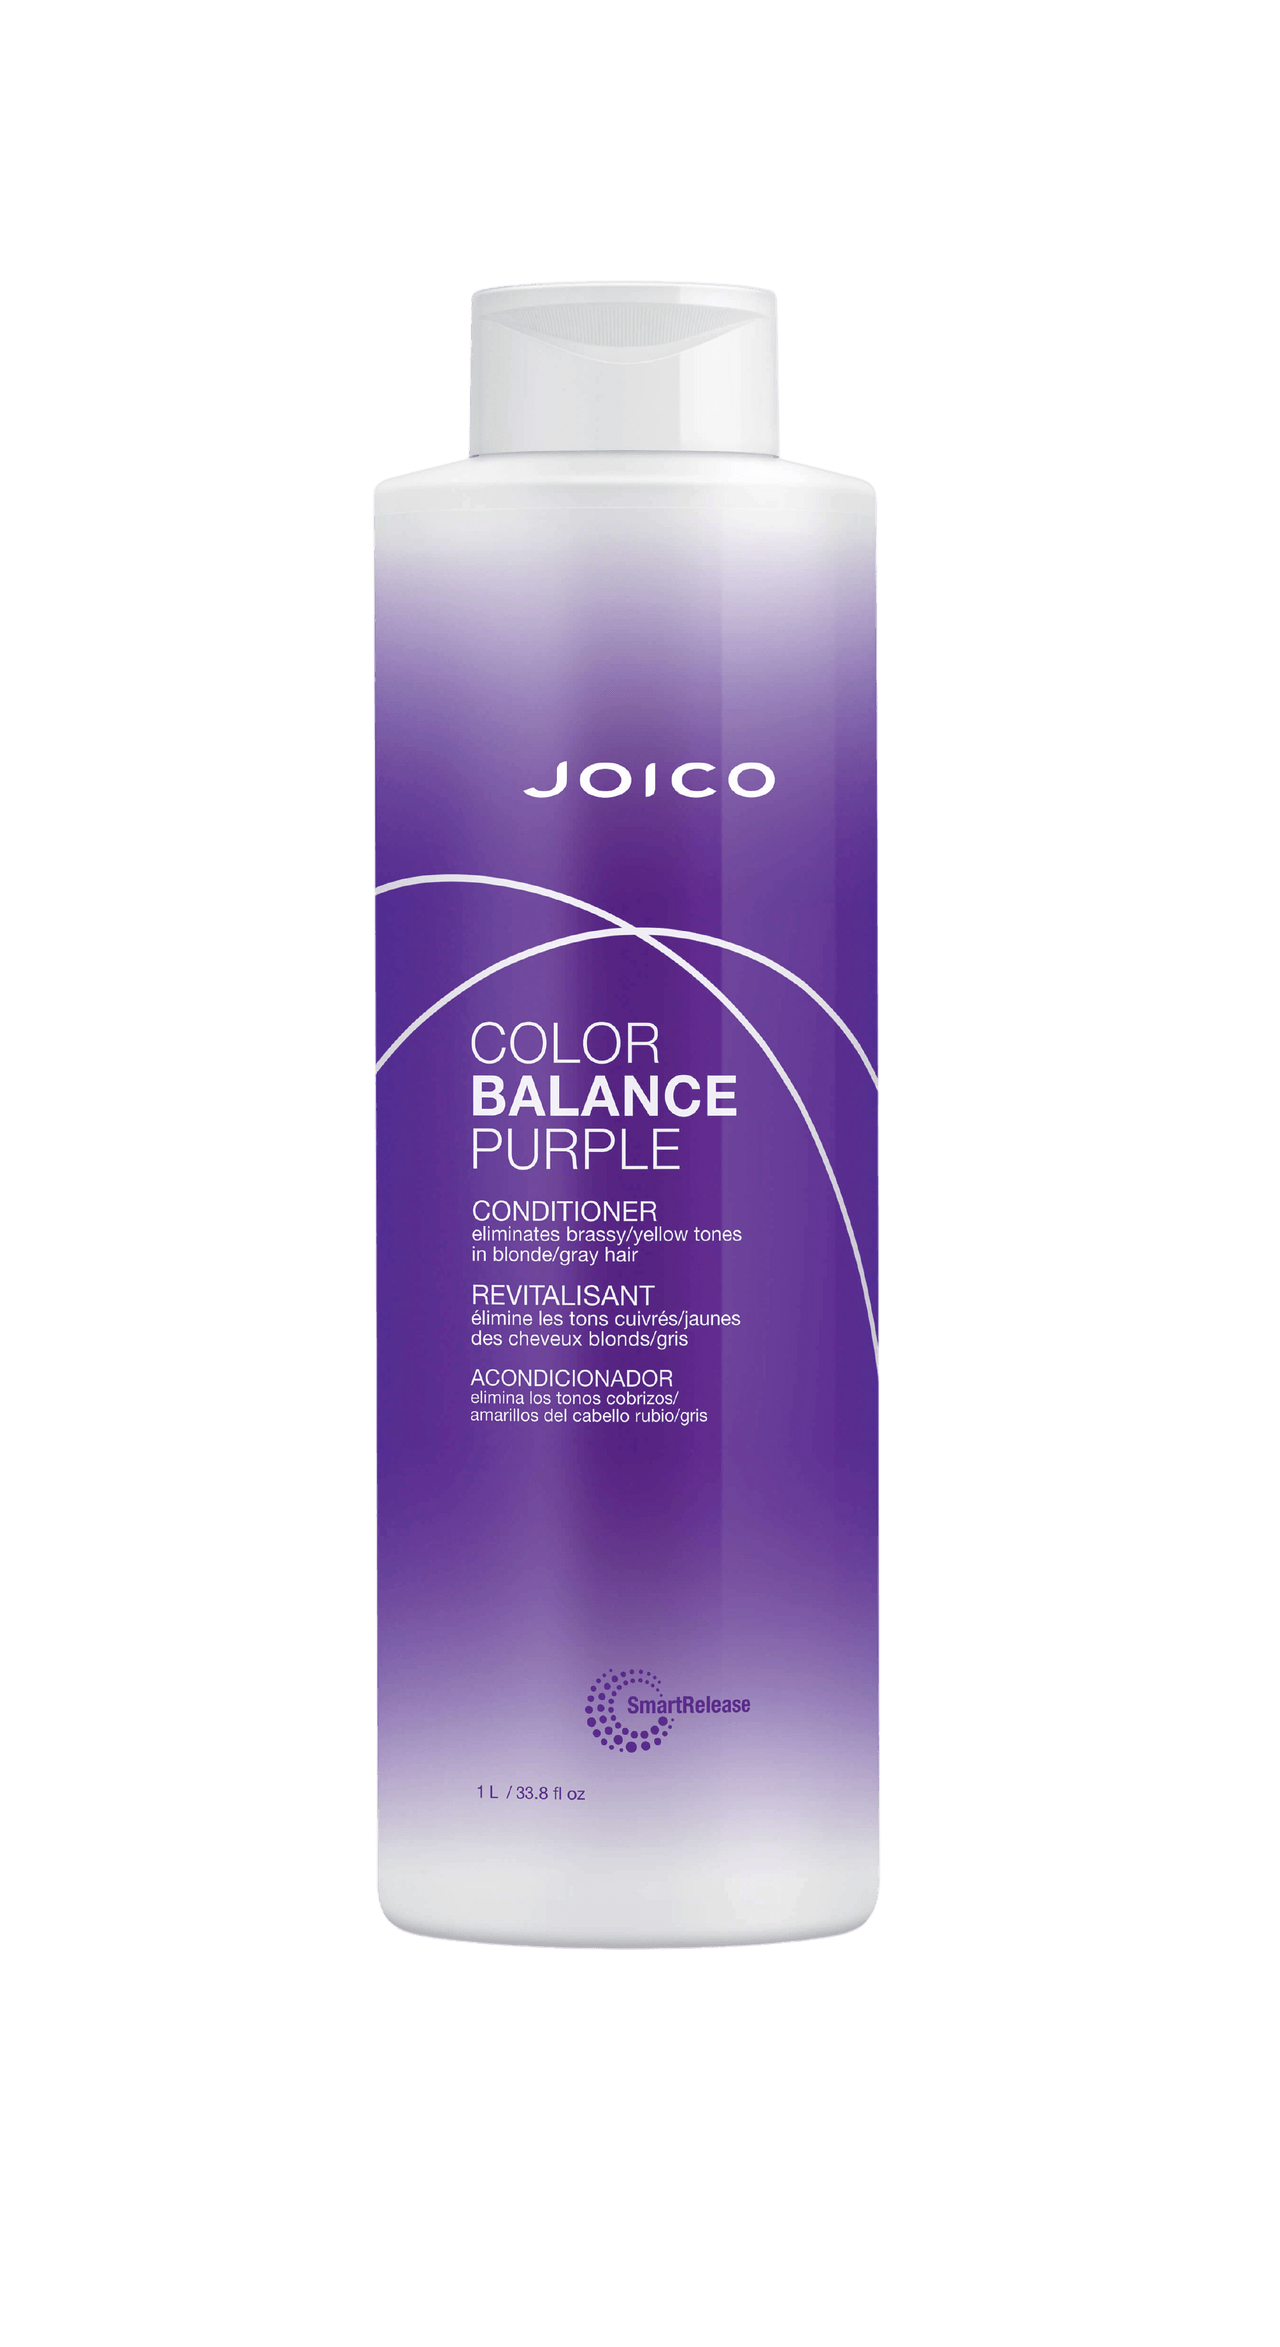 Joico Color Balance Purple Conditioner 33.8oz Bottle